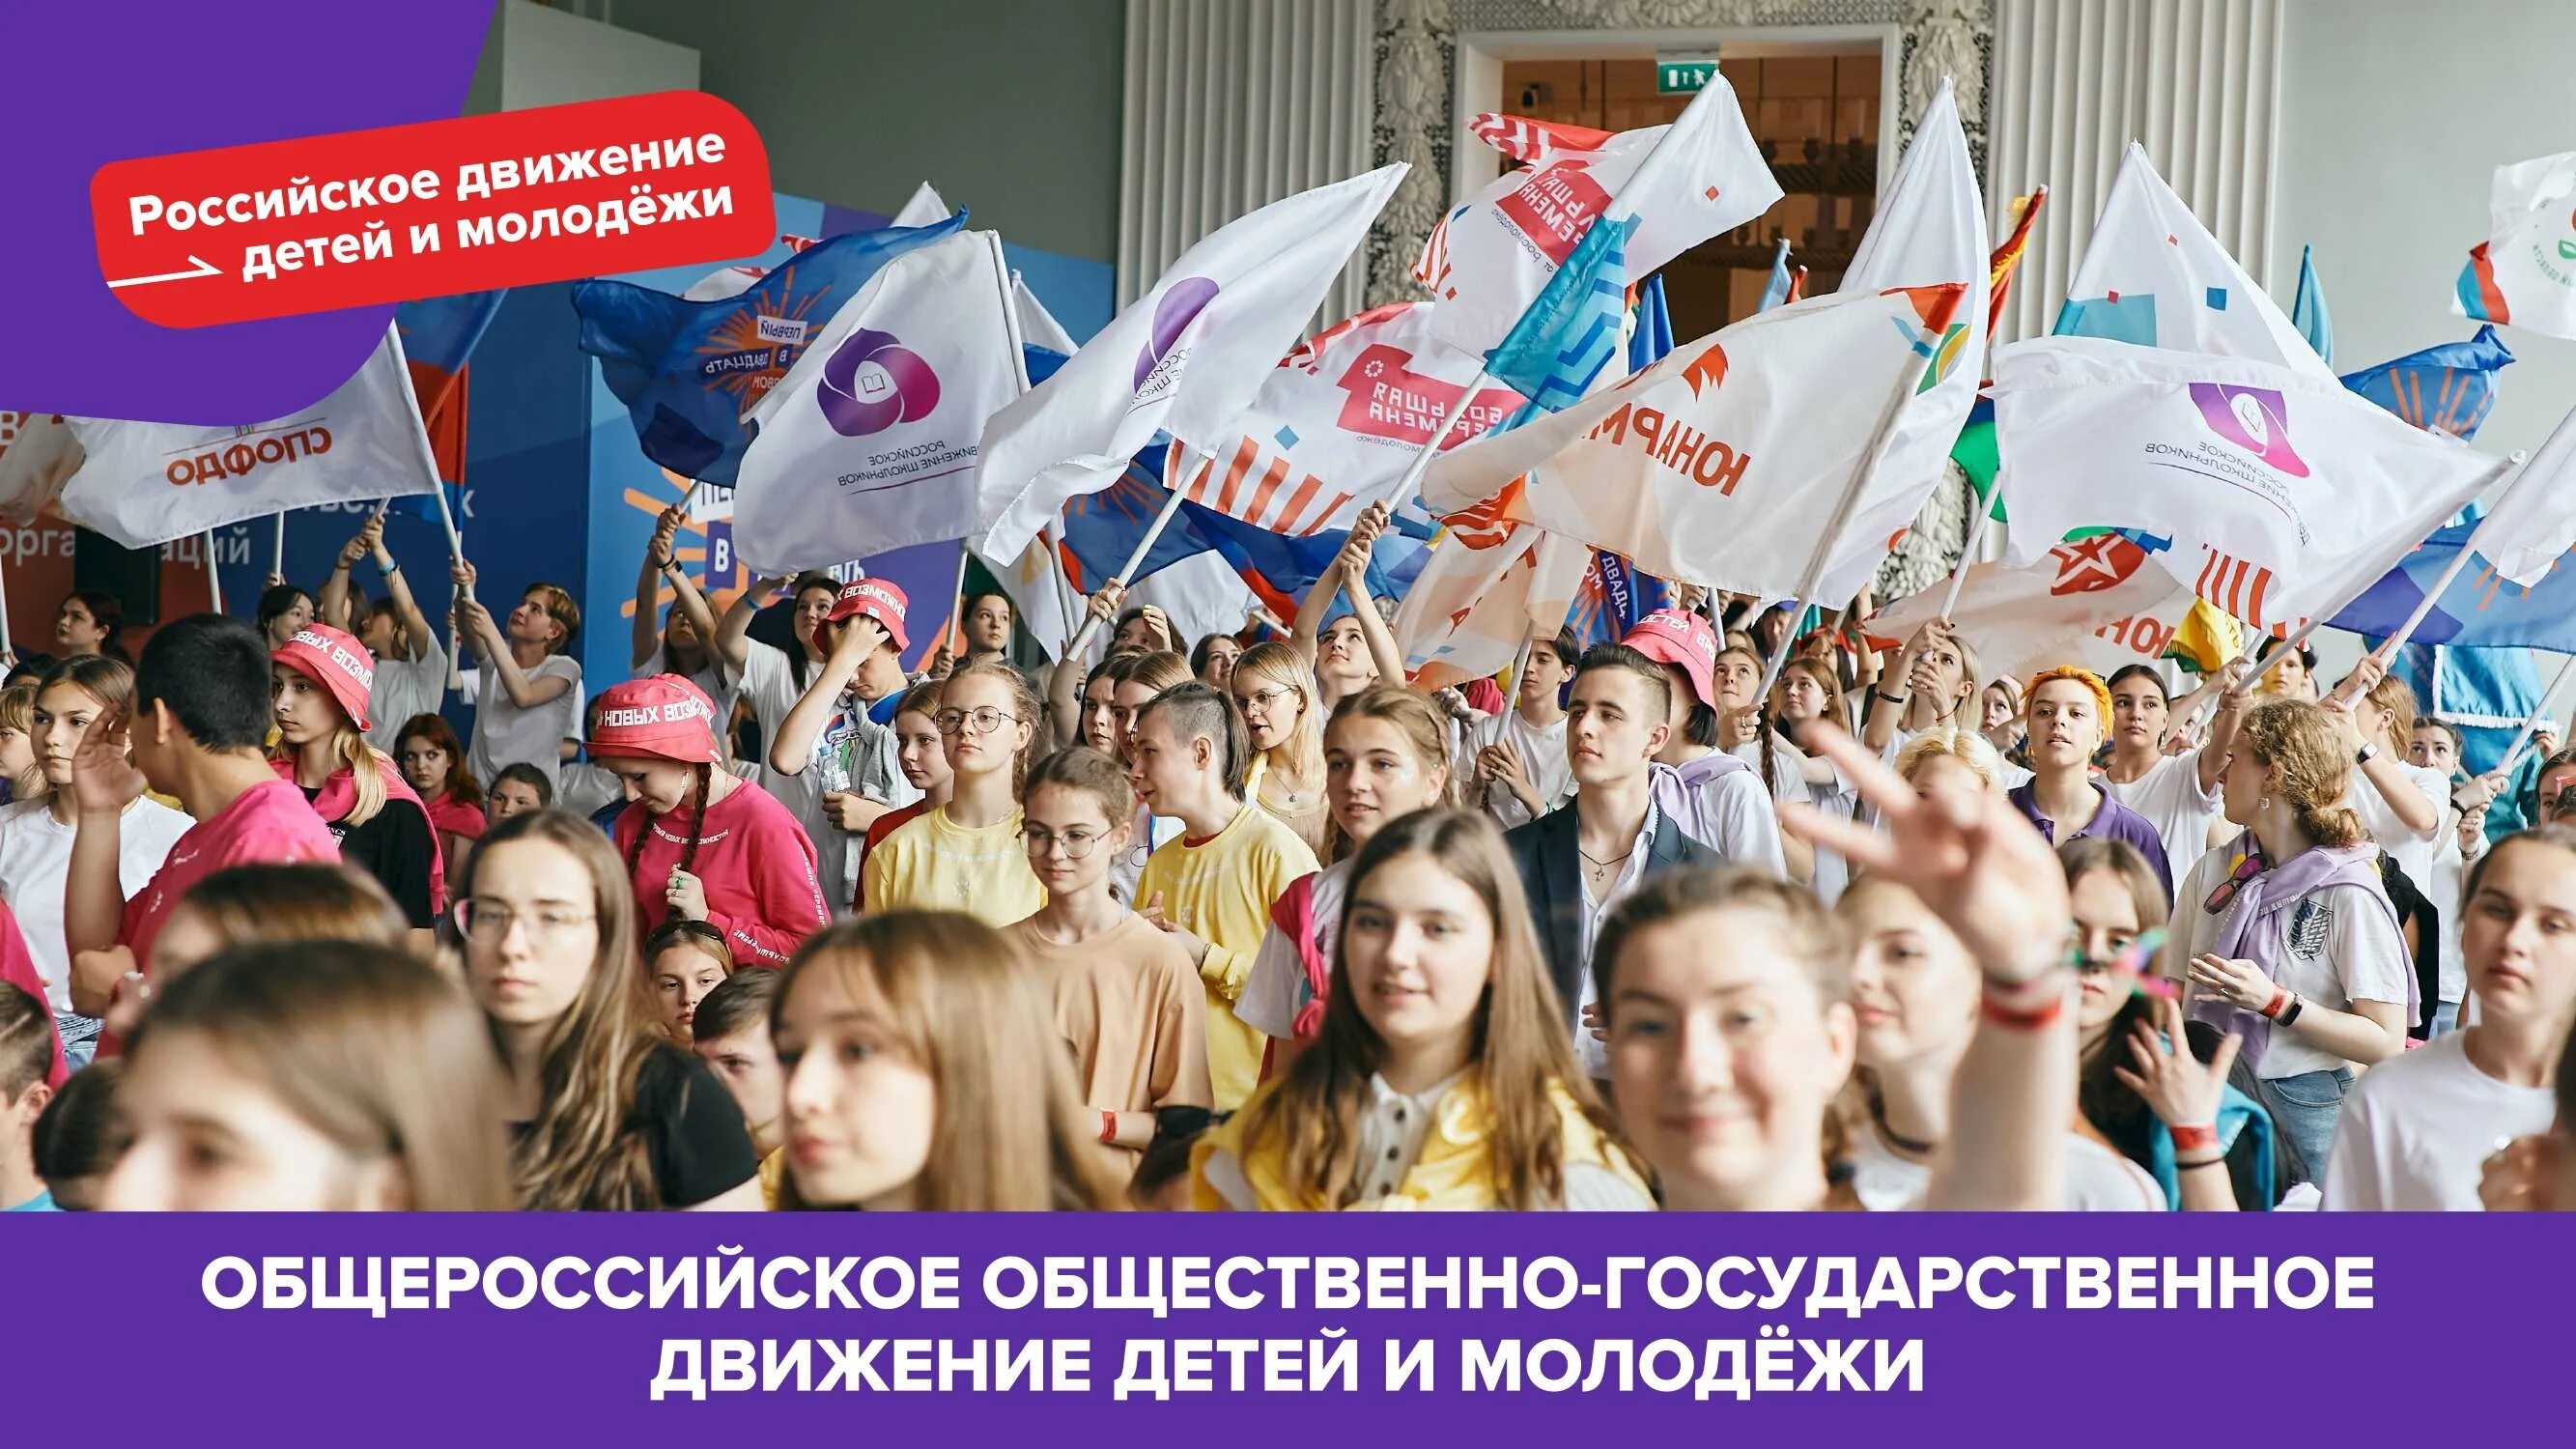 Запуск движения первых. Российское движение детей и молодежи. Россицское движение детей и молодёжи. Российское движение детей и молодёжи движение. Российское движение детей и молодежи движение первых.